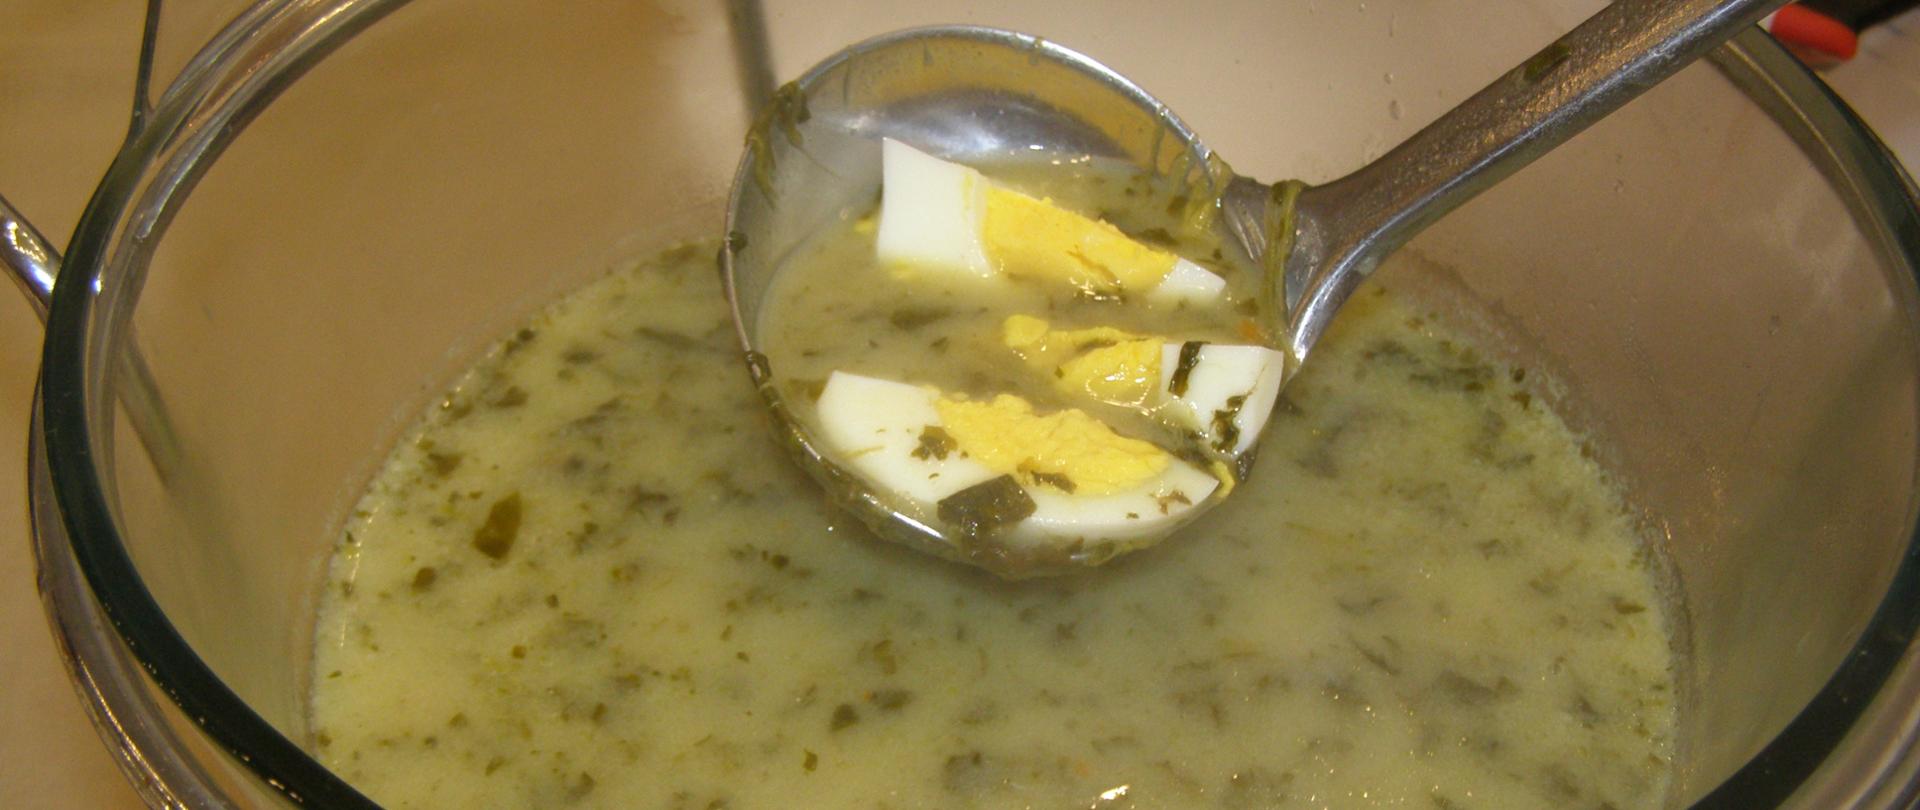 kujawska zupa szczawiowa